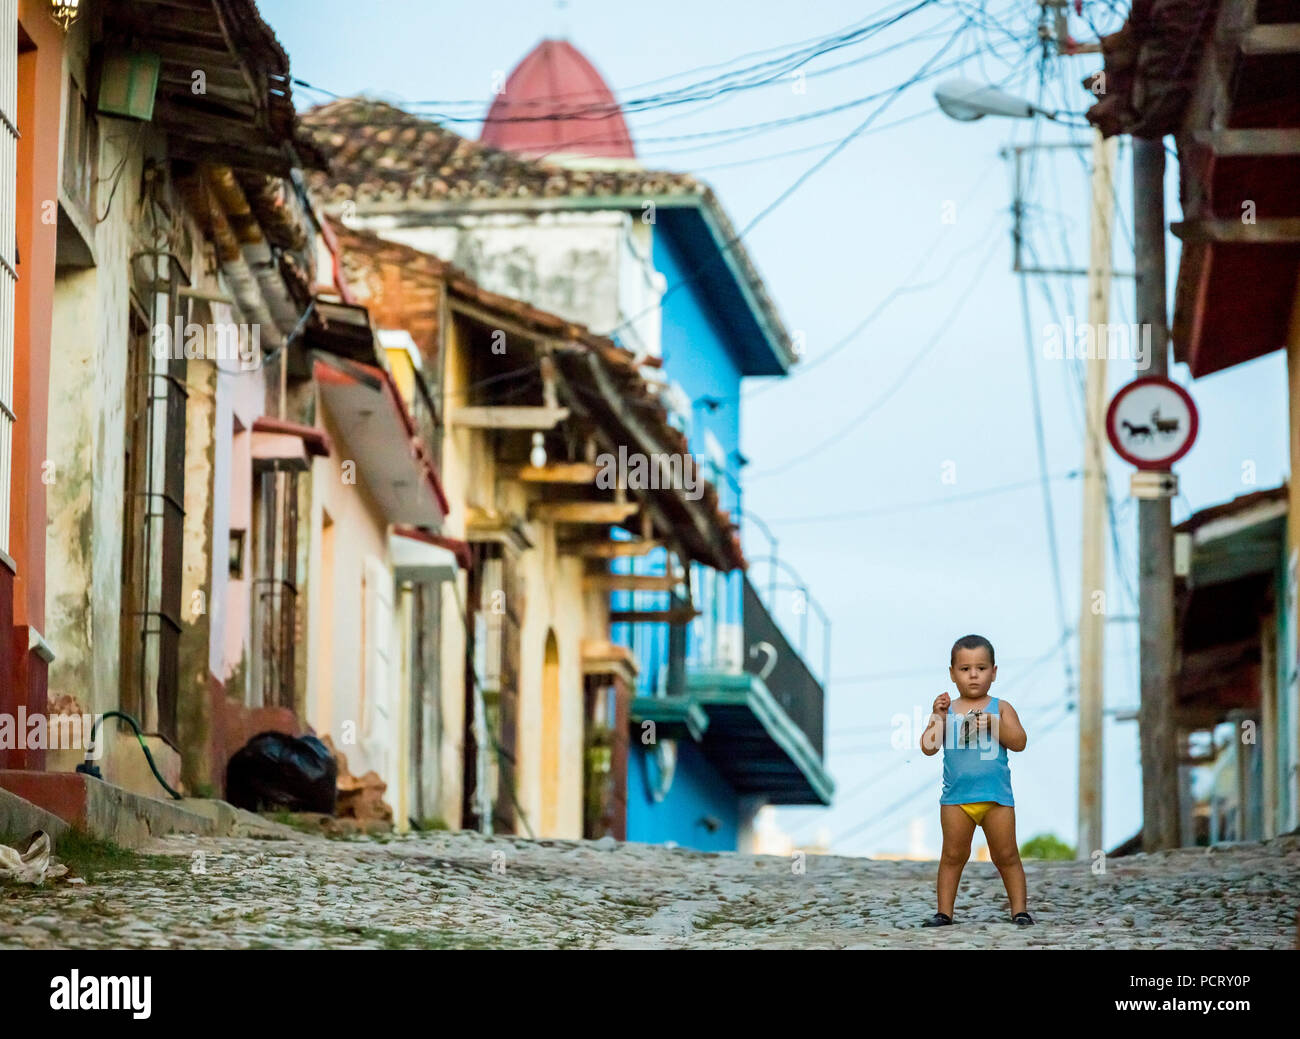 Petit garçon avec des couches se dresse sur la rue, scène de rue dans le centre-ville historique de Trinidad, Trinidad, Cuba, Holguín, Cuba Banque D'Images